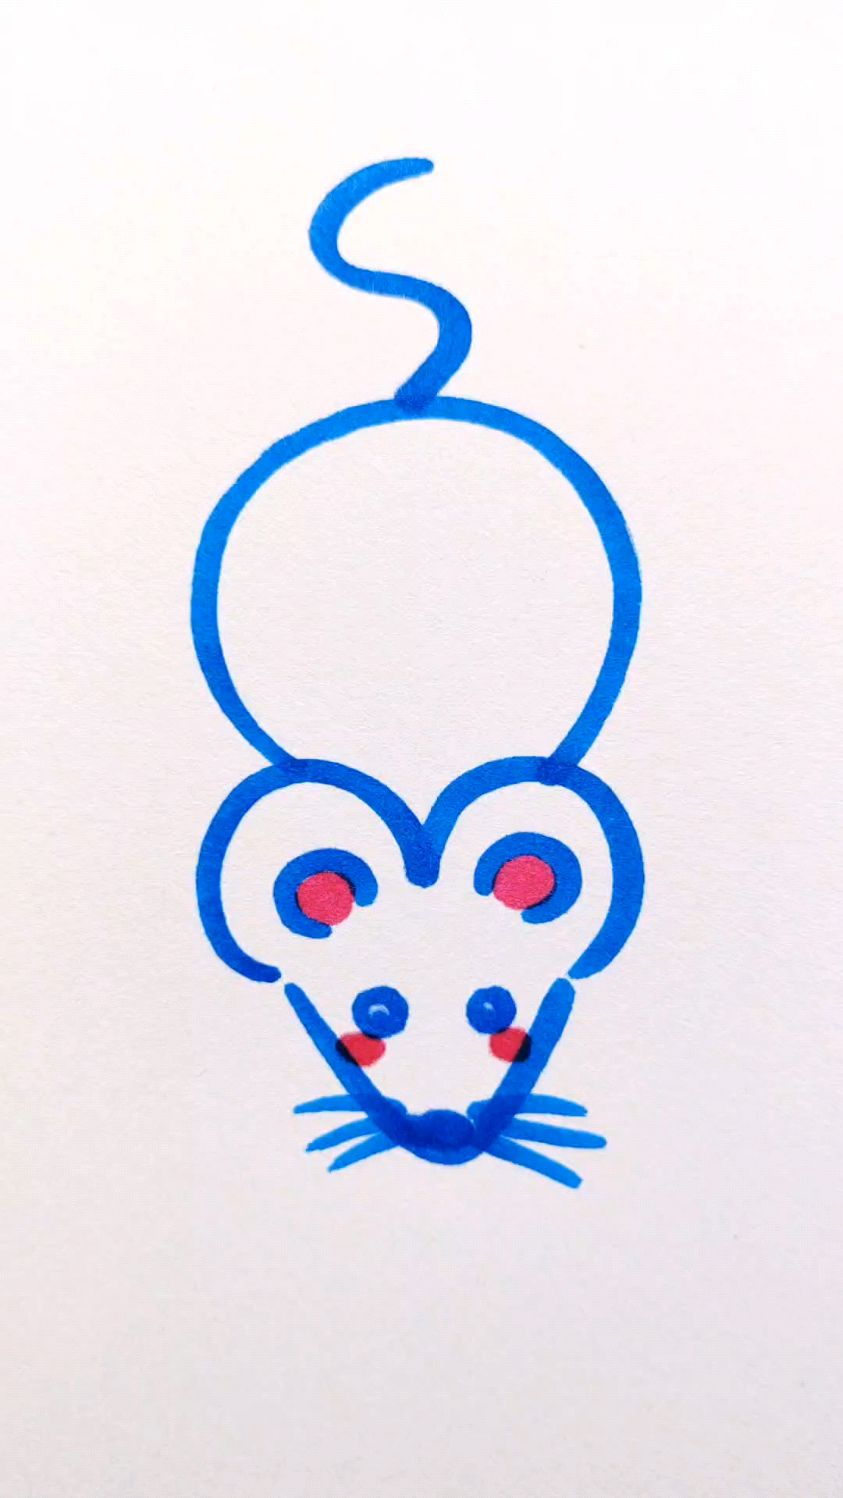 老鼠怎么画简笔画简单图片